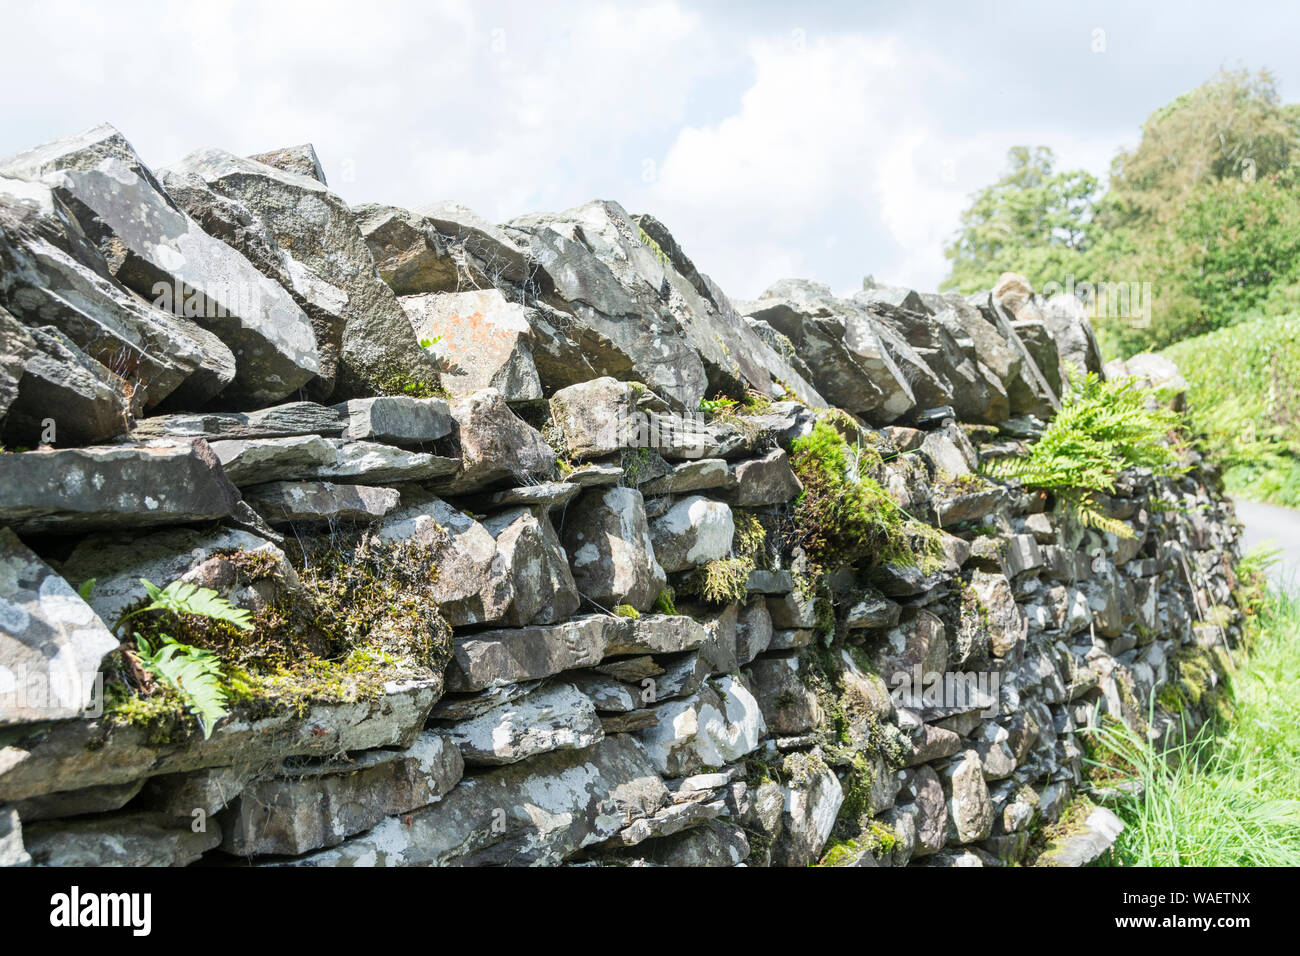 Fern growing on Lakeland Dry Stone Walling, Cumbria, UK Stock Photo